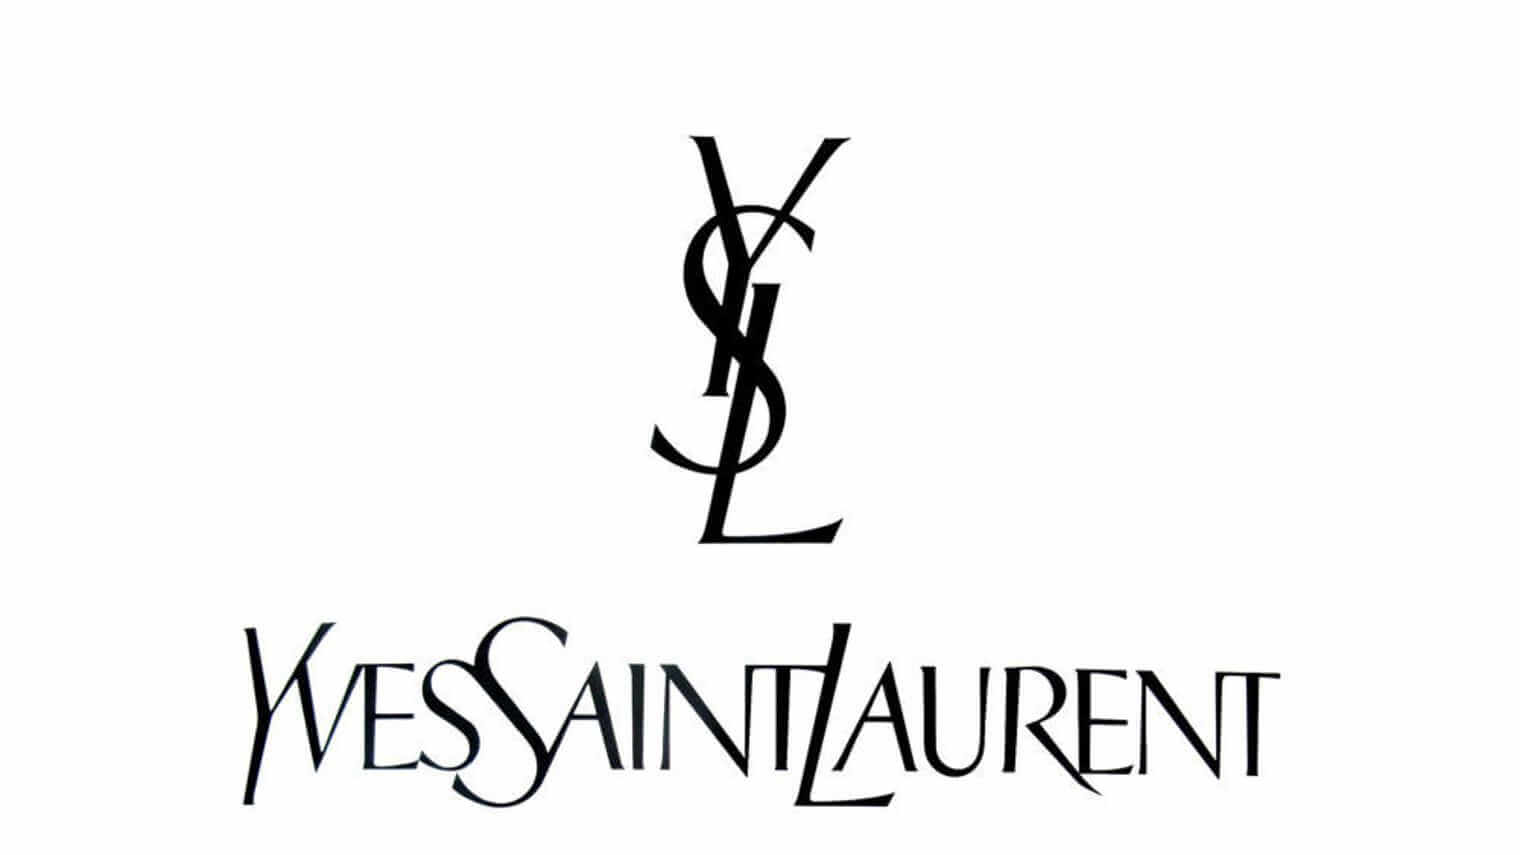 Creó el famosos logotipo de Yves Saint Laurent